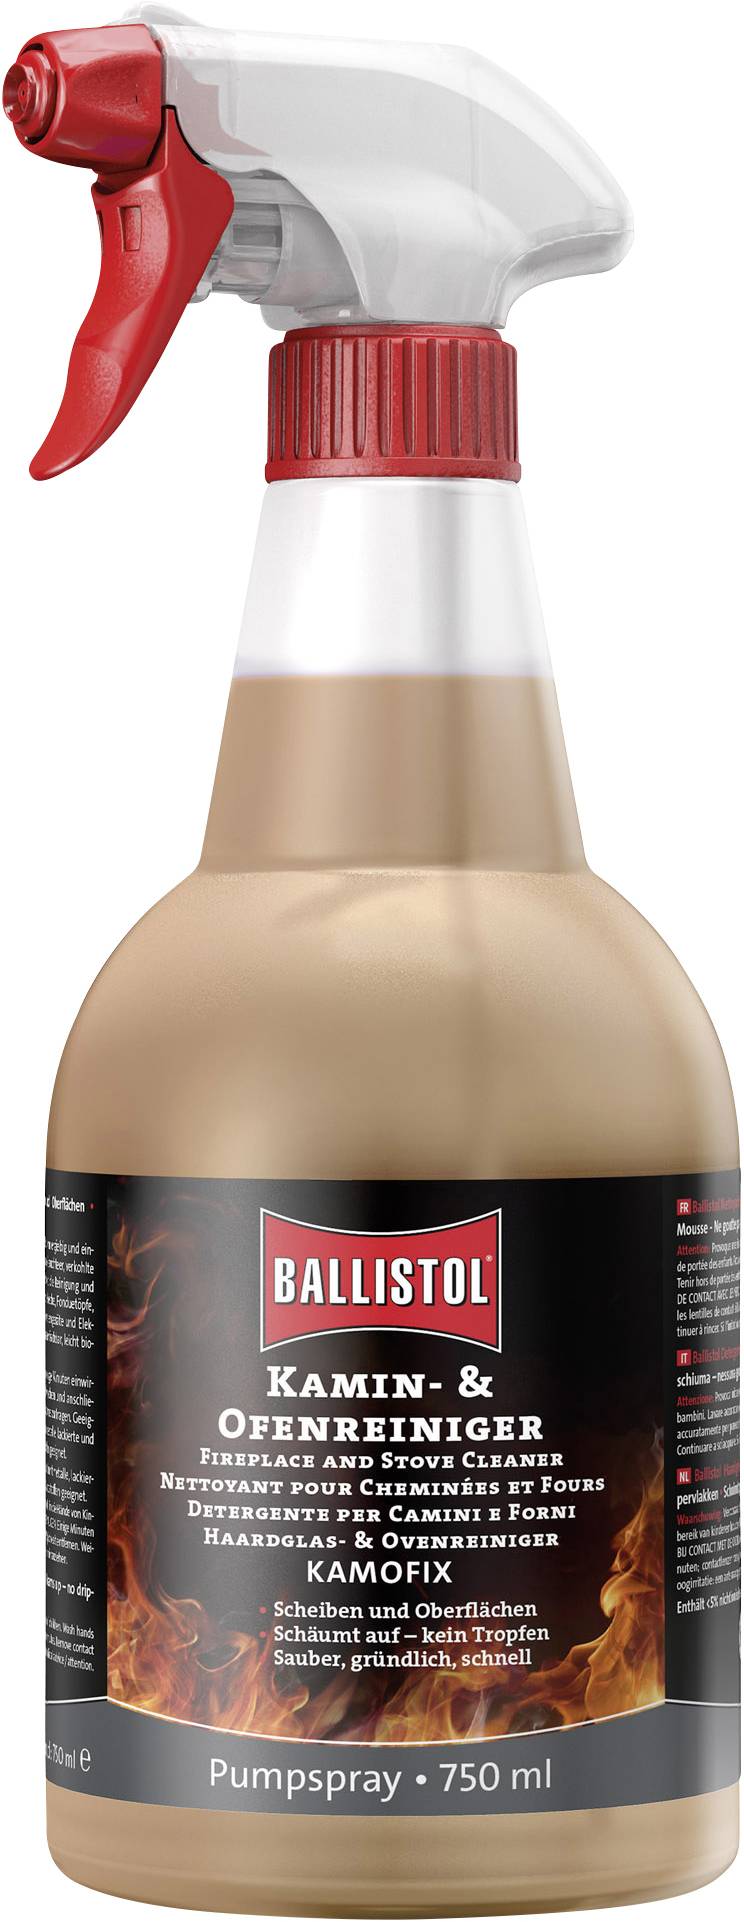 Ballistol Ballistol Kamin- und Ofenreiniger Kamofix, 750 ml 25407  (Reiniger): Tests, Infos & Preisvergleich